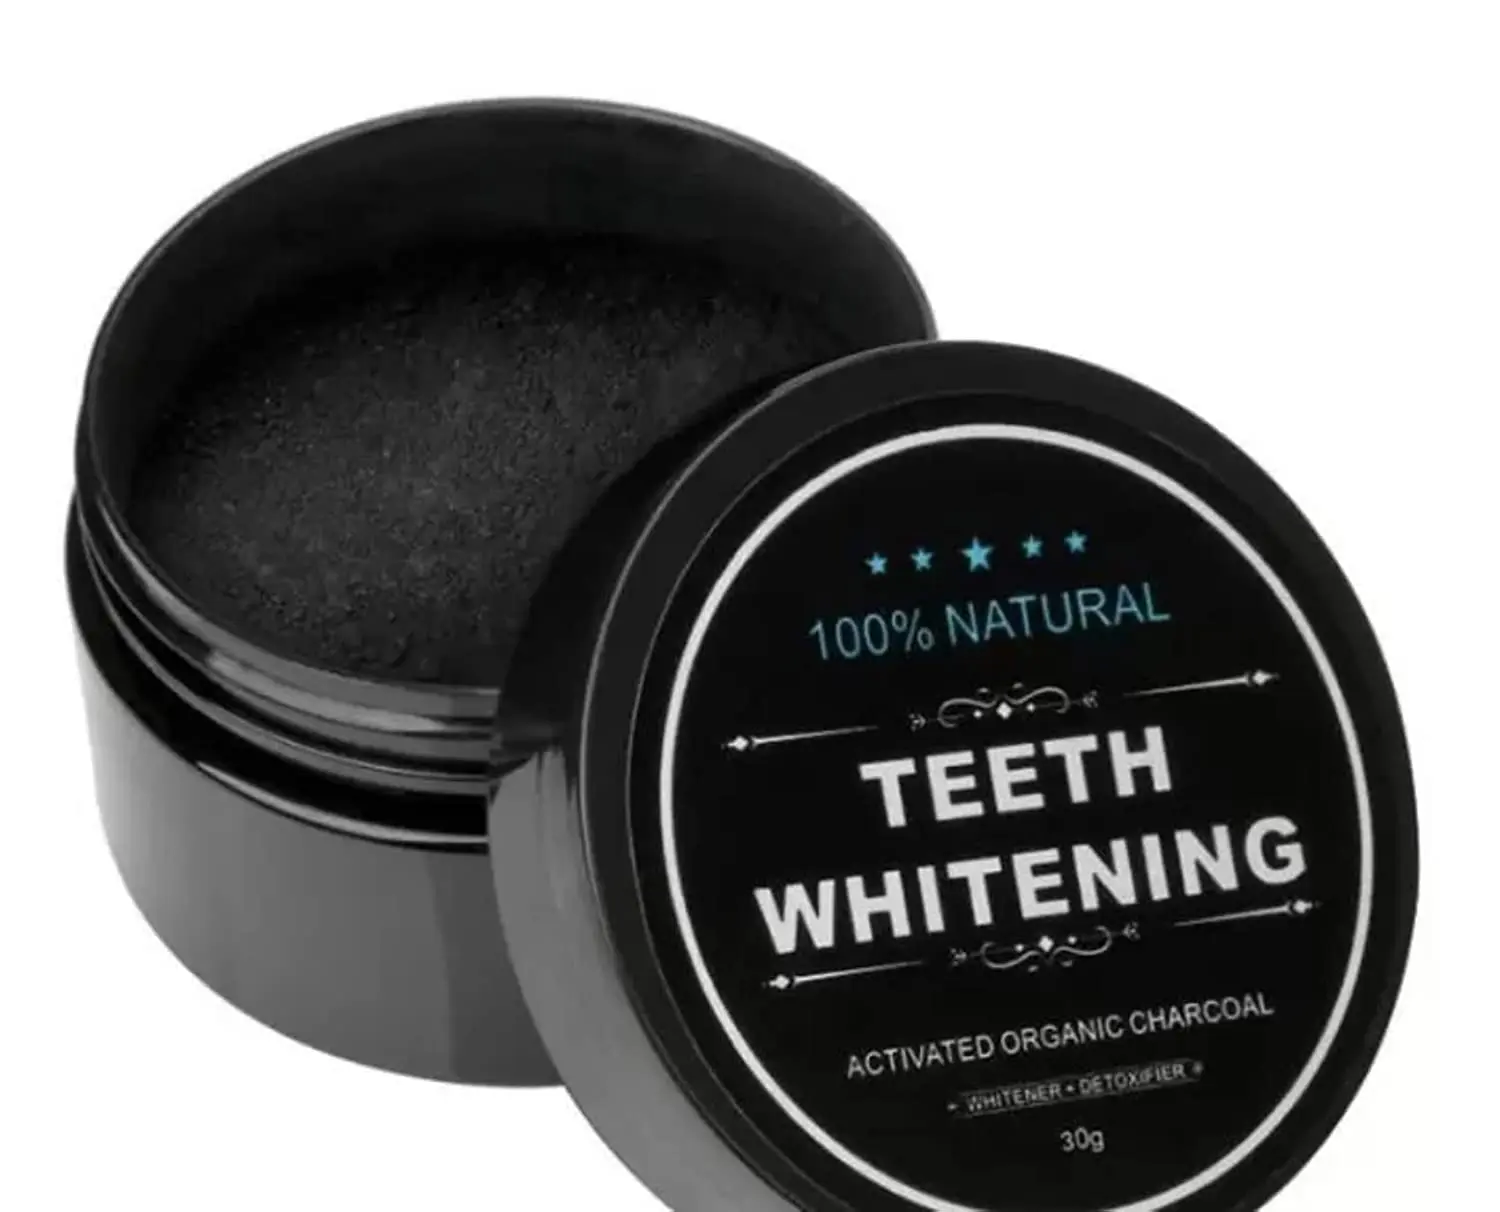 polvo negro para blanquear los dientes - Cómo se llama el polvo negro para blanquear los dientes